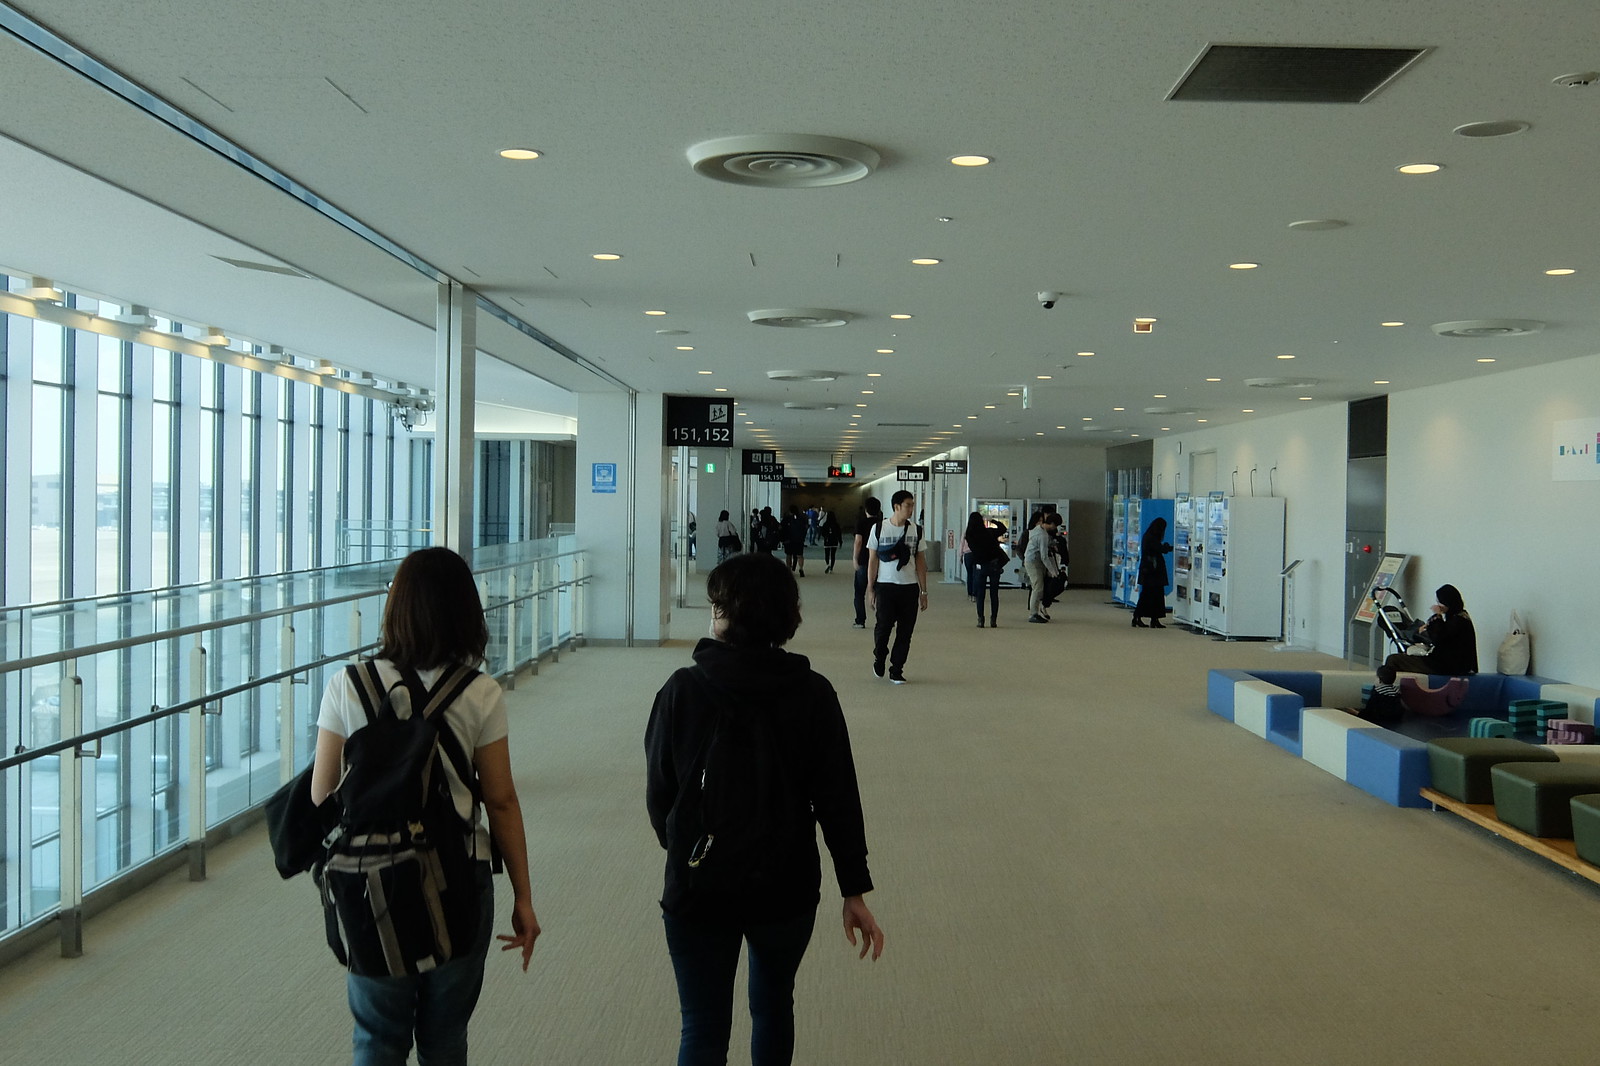 Narita Airport Terminal 3